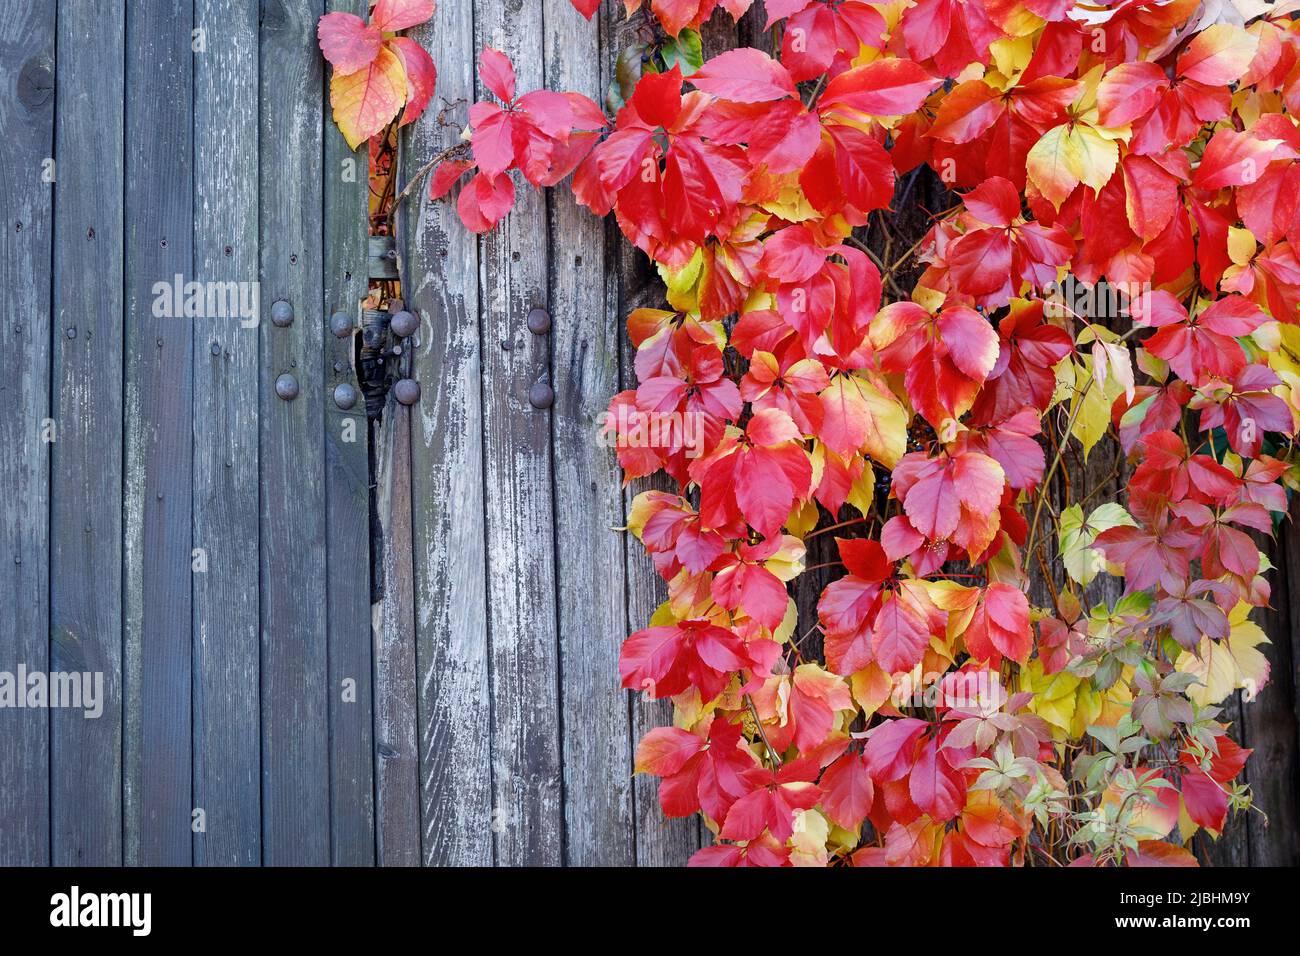 Schöne Pflanze mit roten Herbstblättern auf altem Holzzaun. Im Bild ist freier Speicherplatz für Text vorhanden. Stockfoto